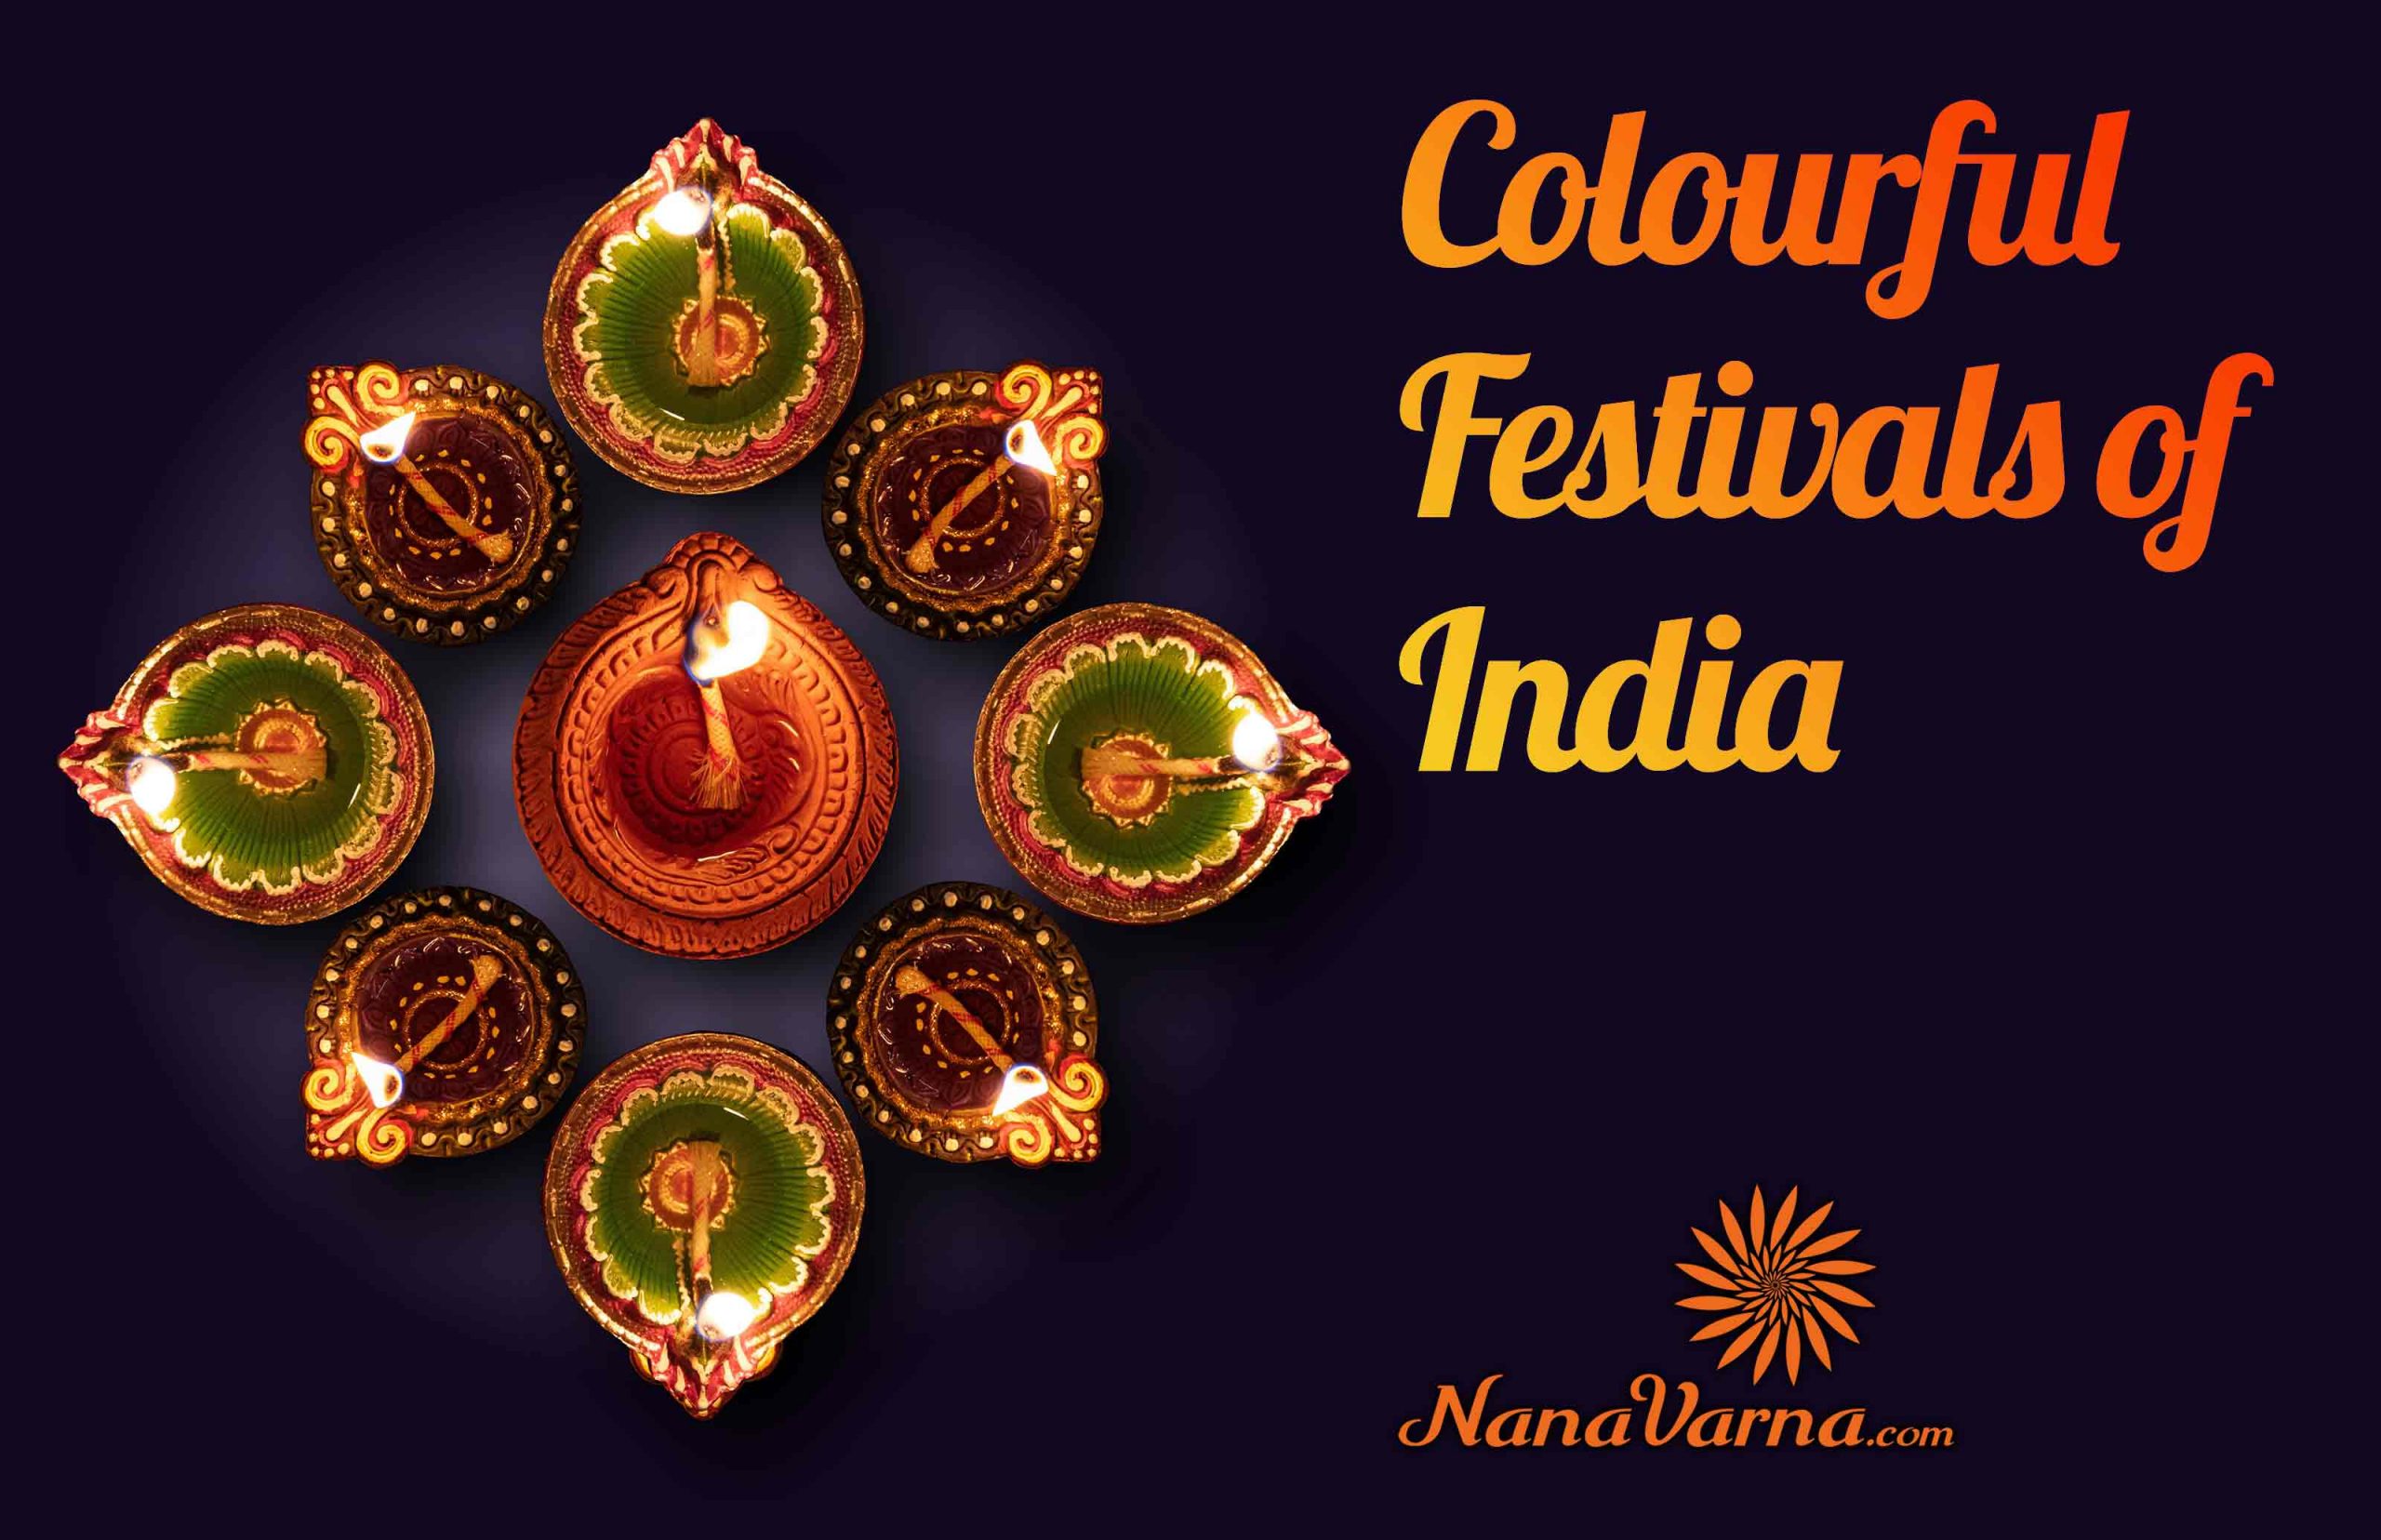 Cultural Festivals of India